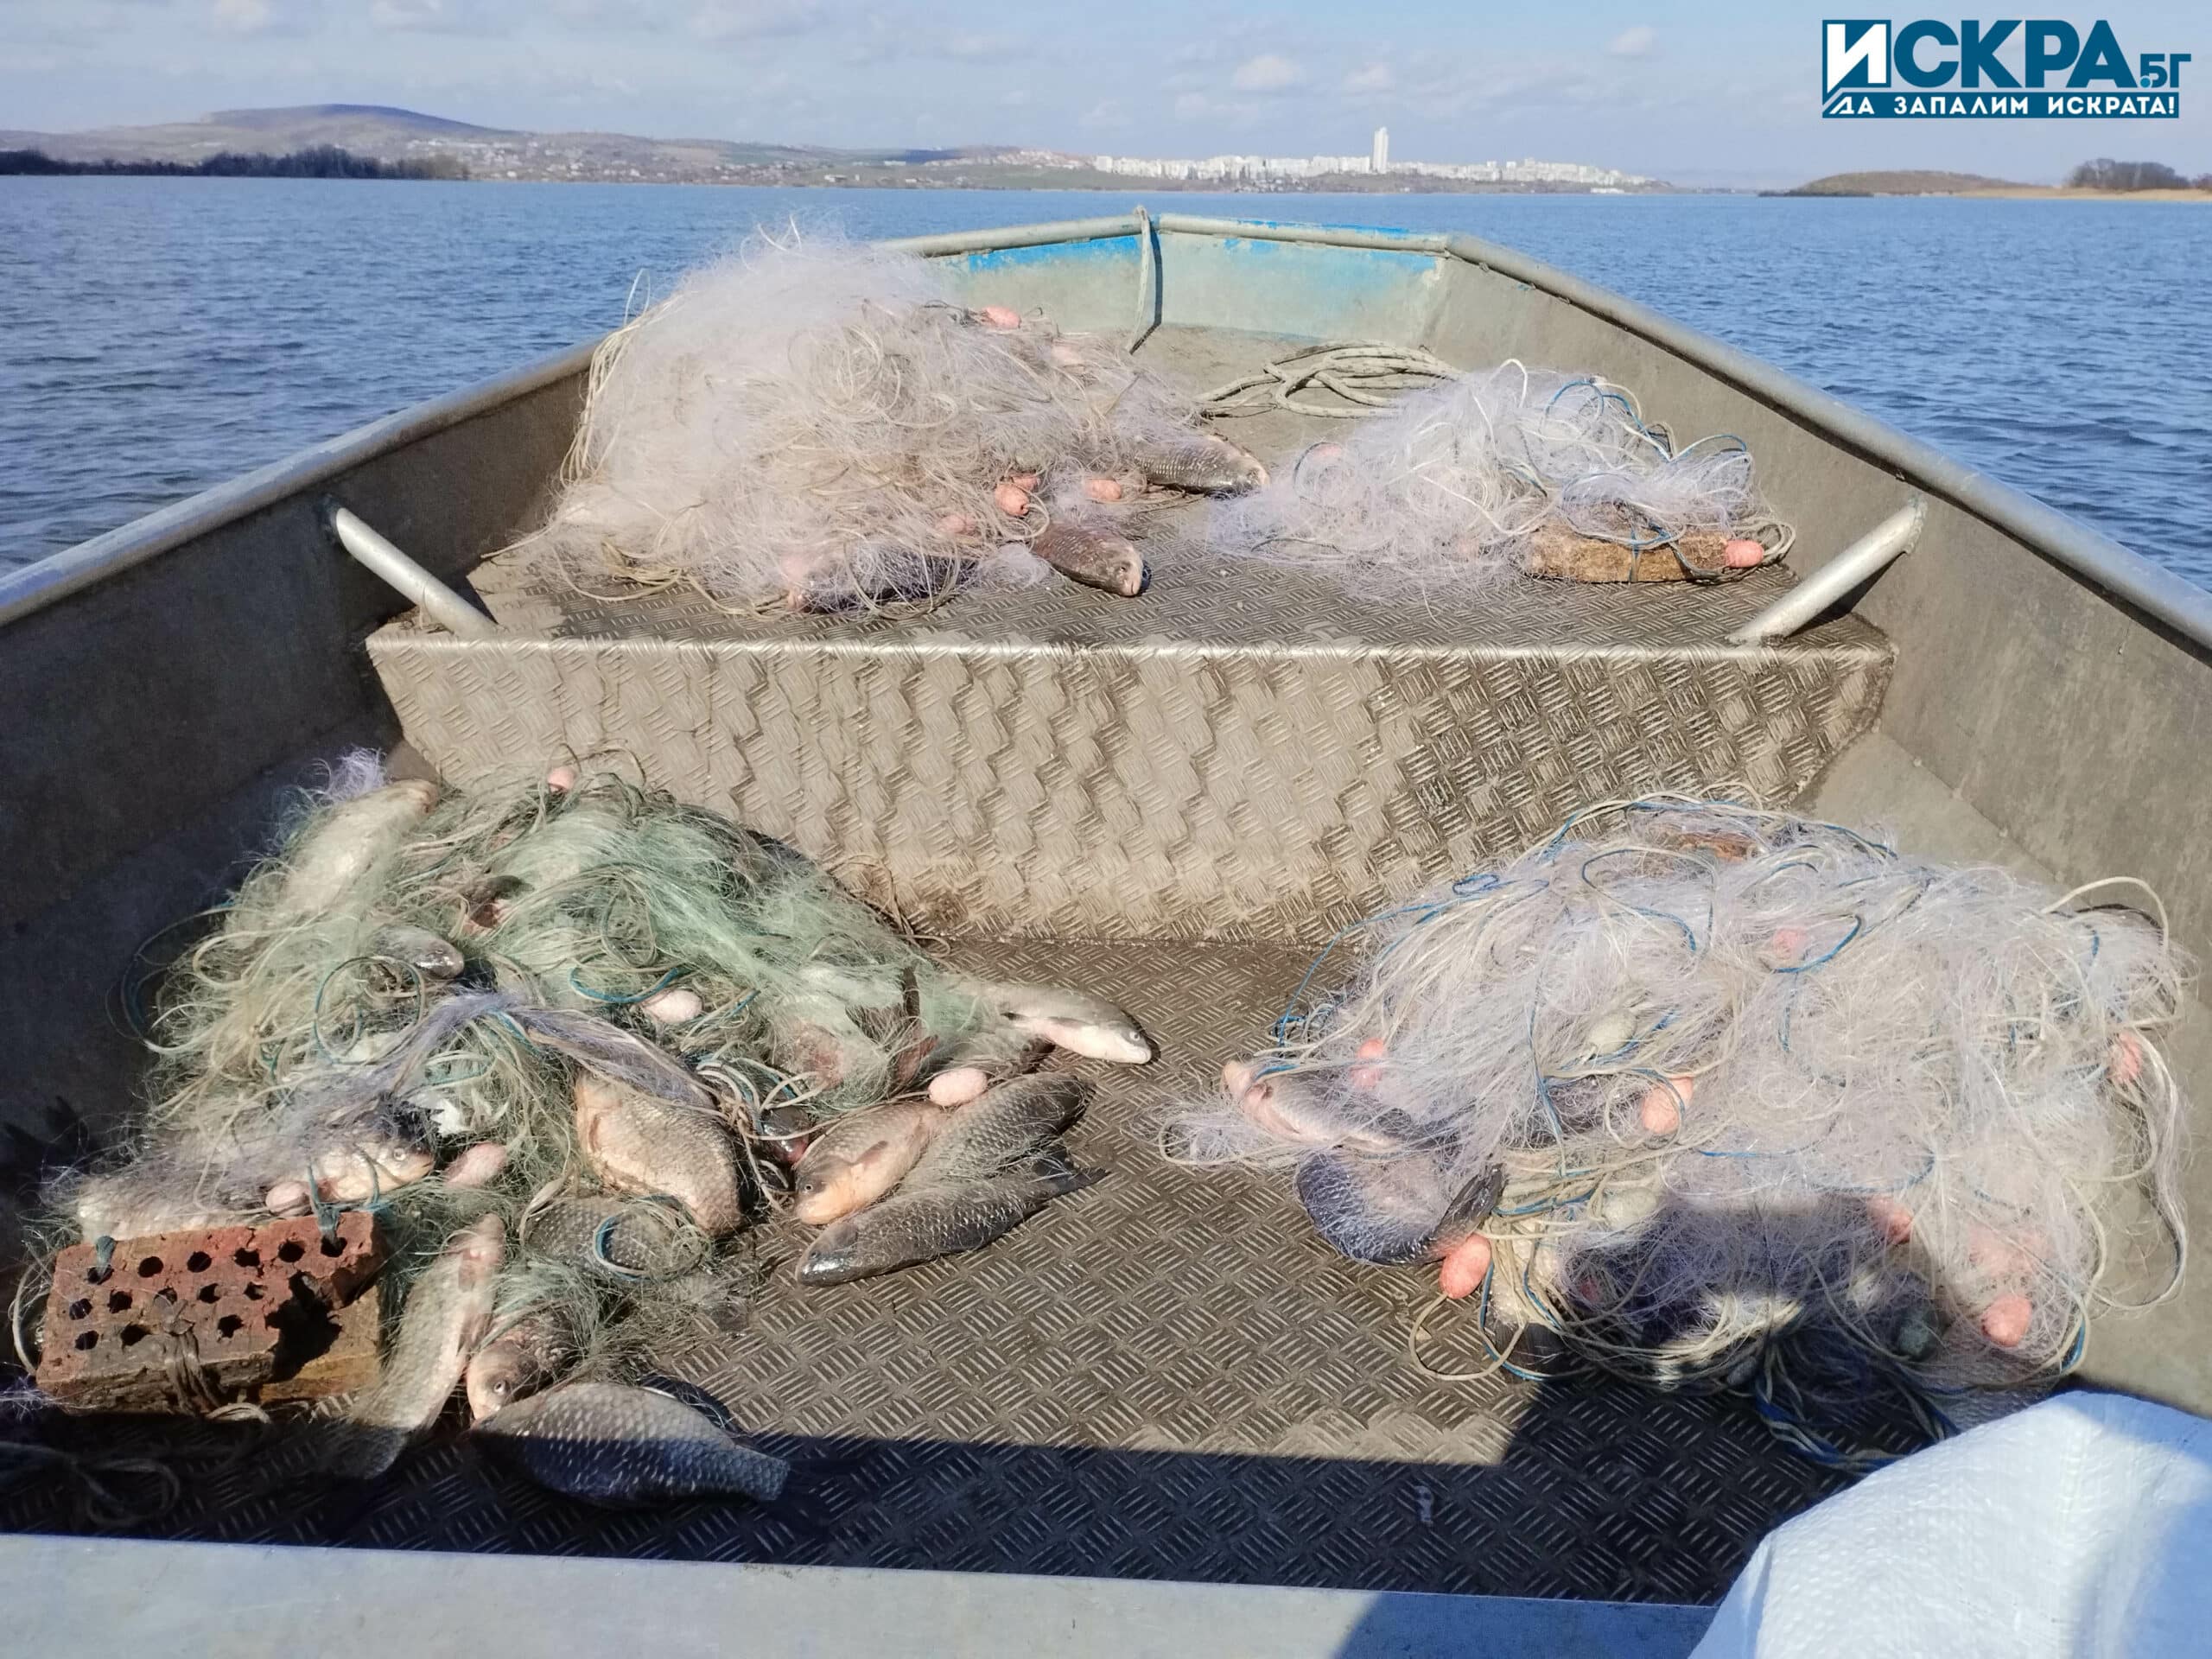 Общо количество от 120 кг риба е било открито в